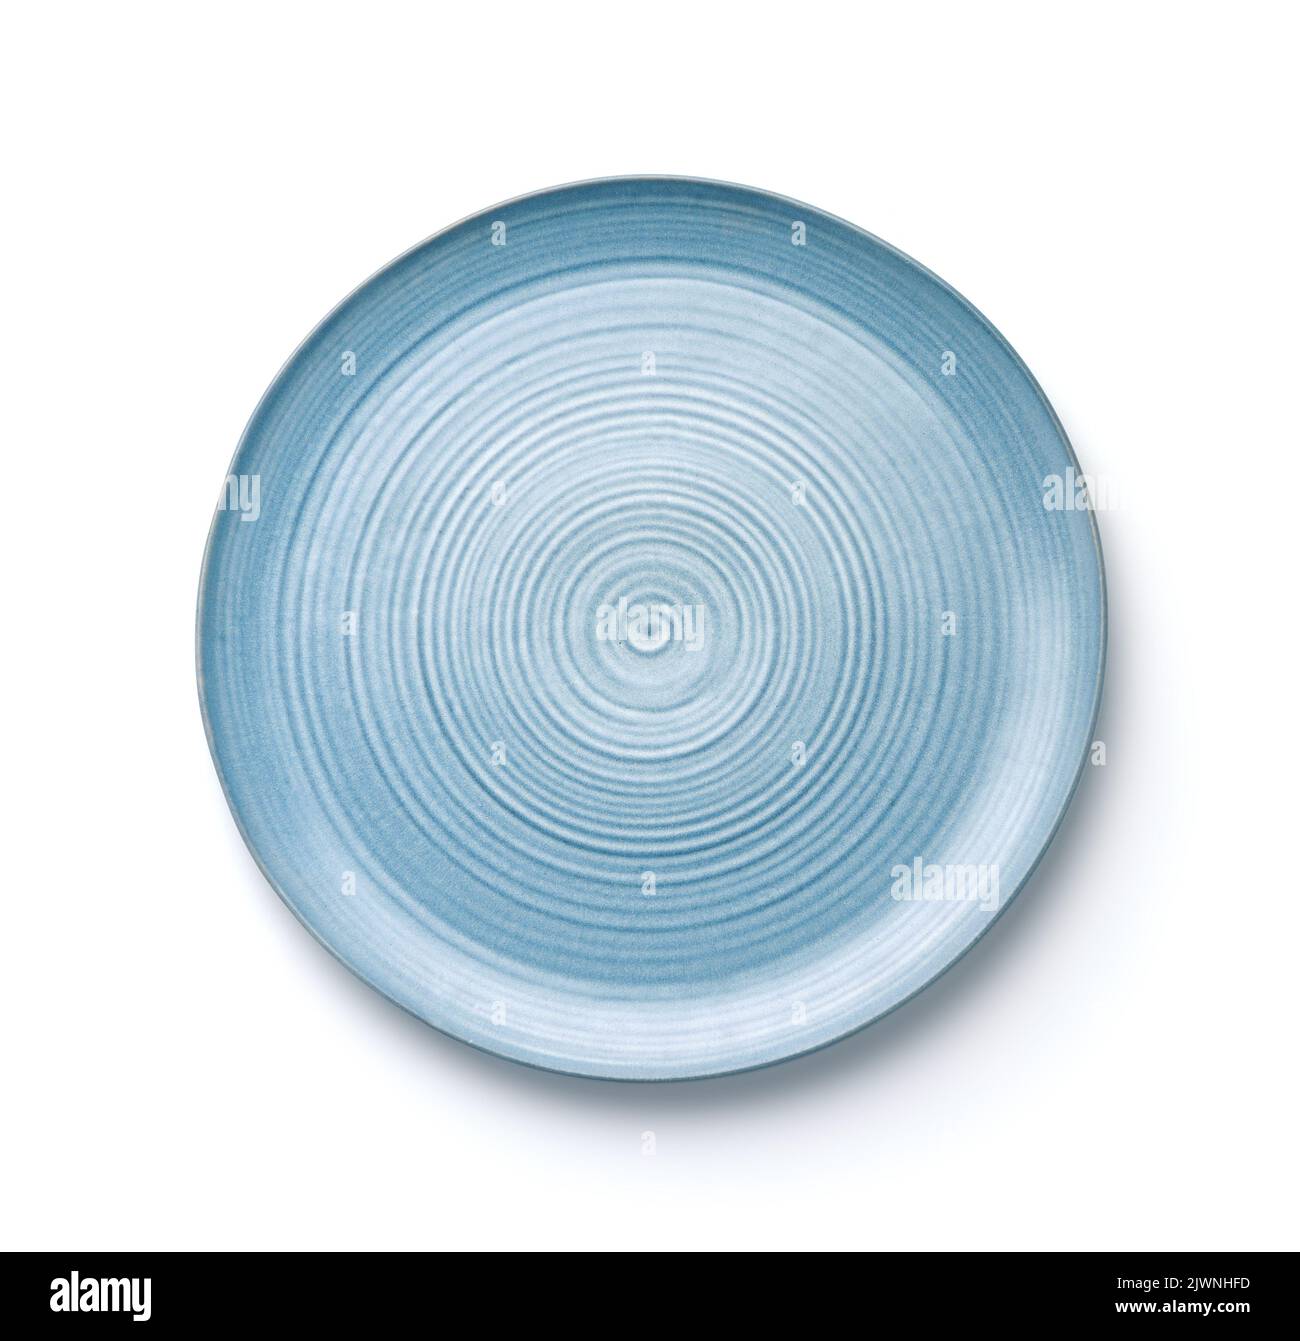 Vista superior del plato de cerámica plano azul hecho a mano aislado sobre blanco Foto de stock